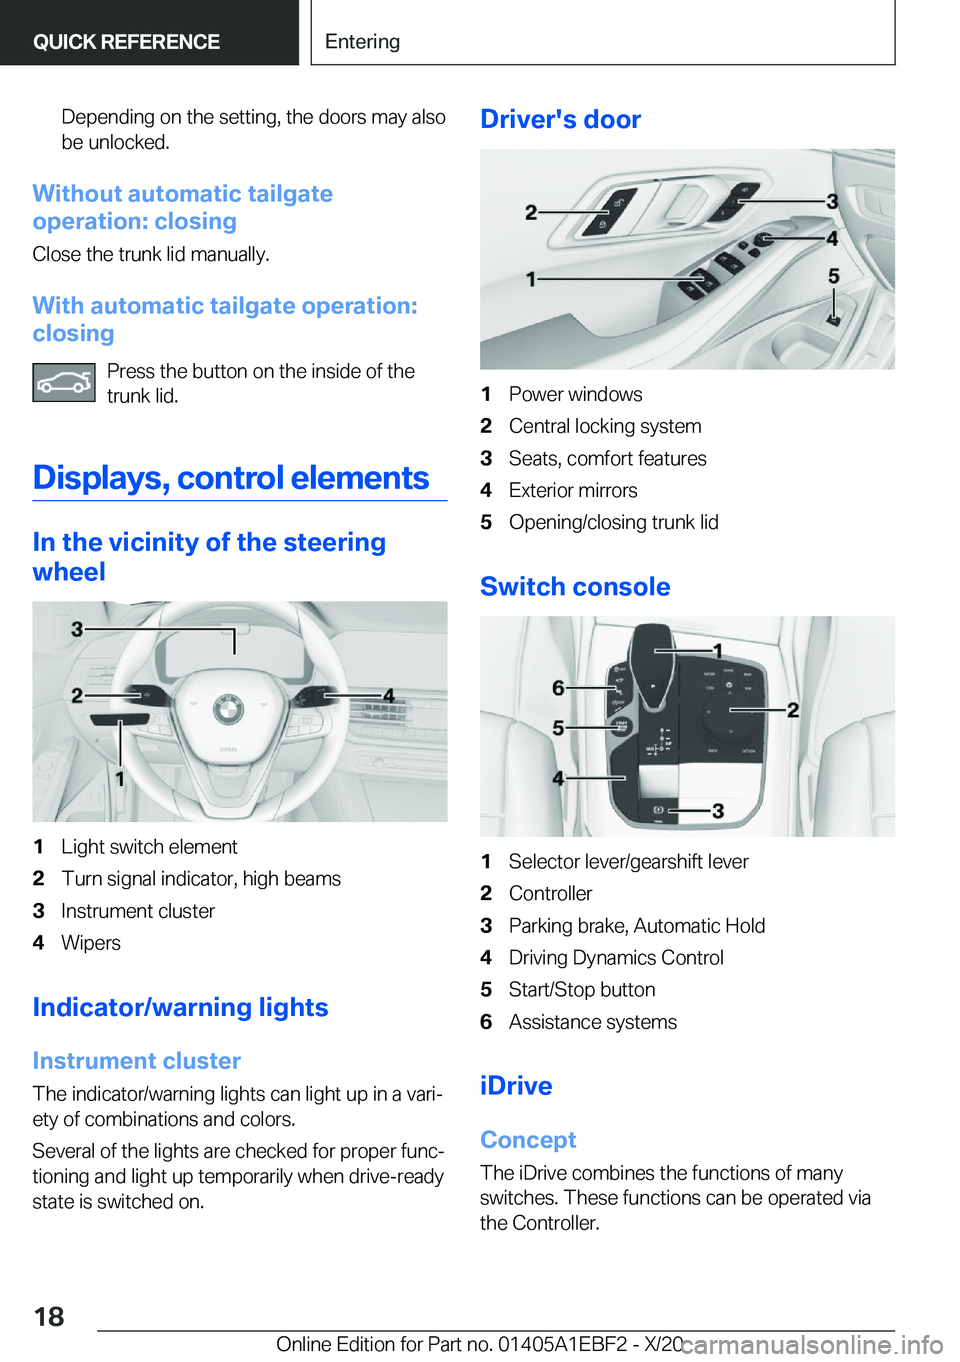 BMW 3 SERIES 2021 User Guide �D�e�p�e�n�d�i�n�g��o�n��t�h�e��s�e�t�t�i�n�g�,��t�h�e��d�o�o�r�s��m�a�y��a�l�s�o�b�e��u�n�l�o�c�k�e�d�.
�W�i�t�h�o�u�t��a�u�t�o�m�a�t�i�c��t�a�i�l�g�a�t�e
�o�p�e�r�a�t�i�o�n�:��c�l�o�s�i�n